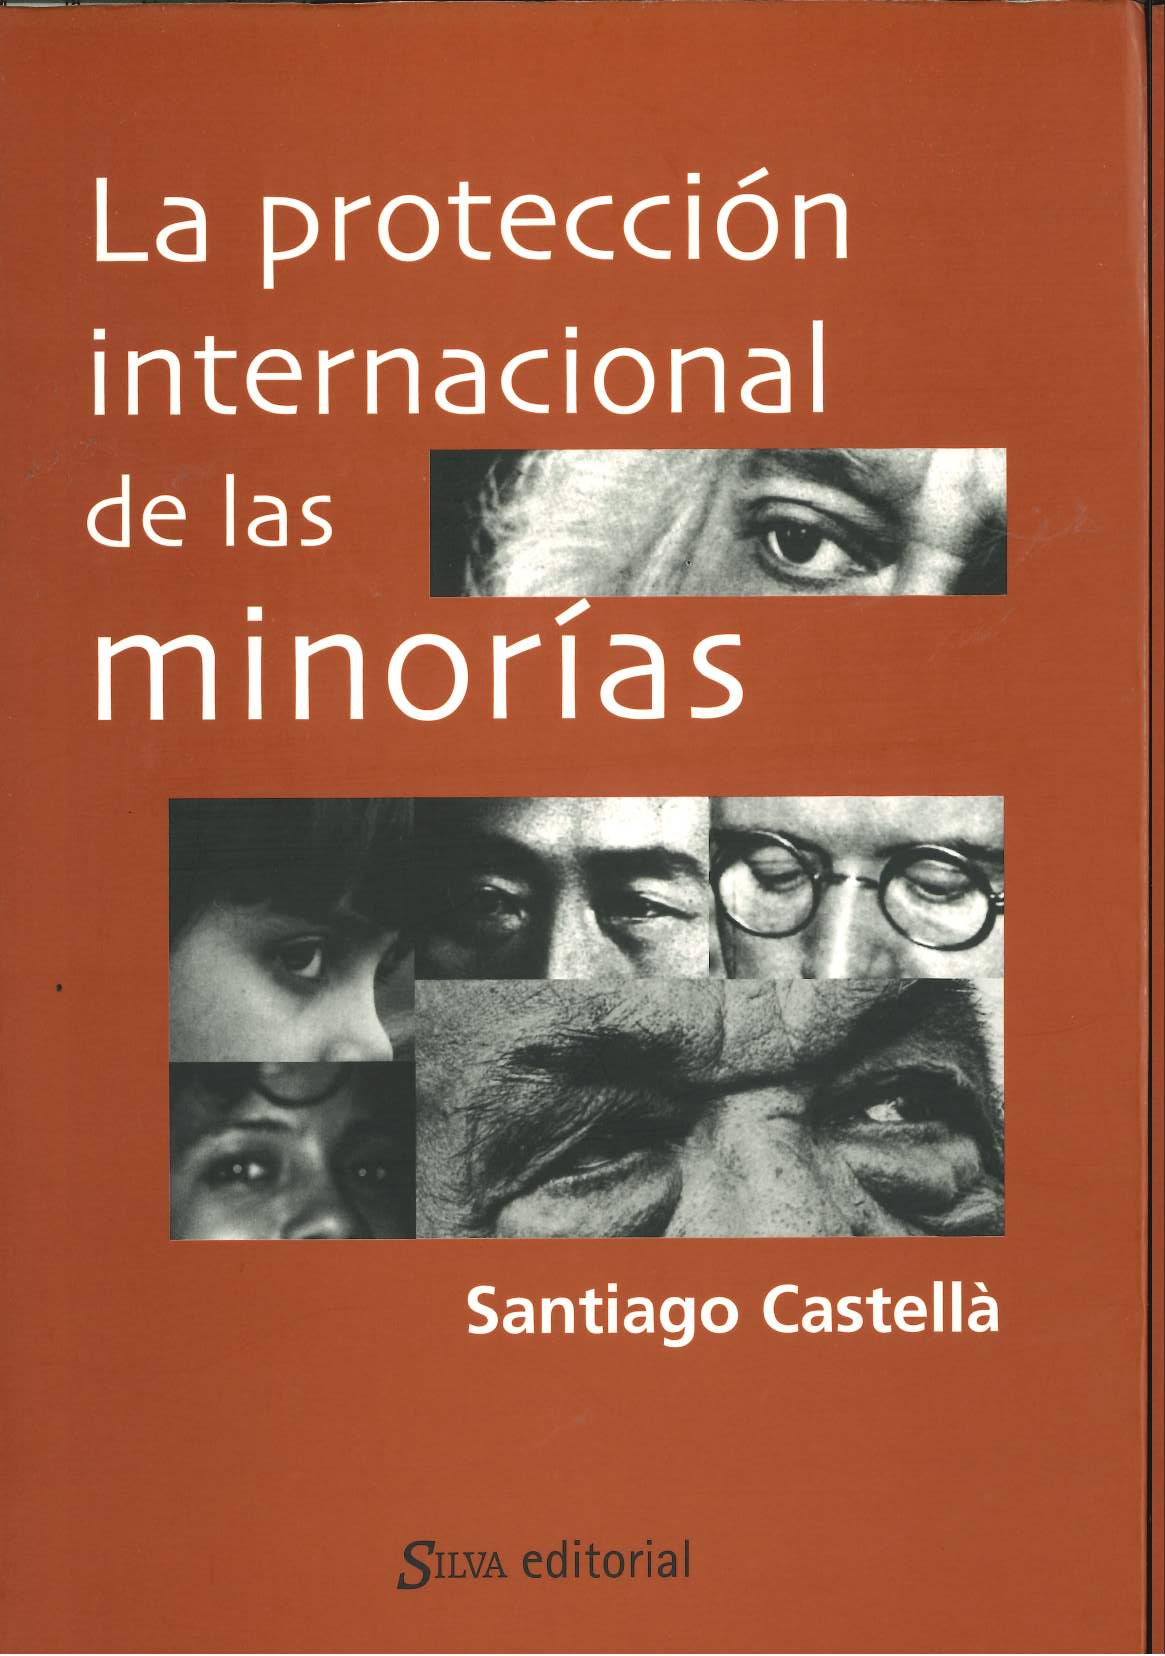 Imagen de portada del libro La protección internacional de las minorías